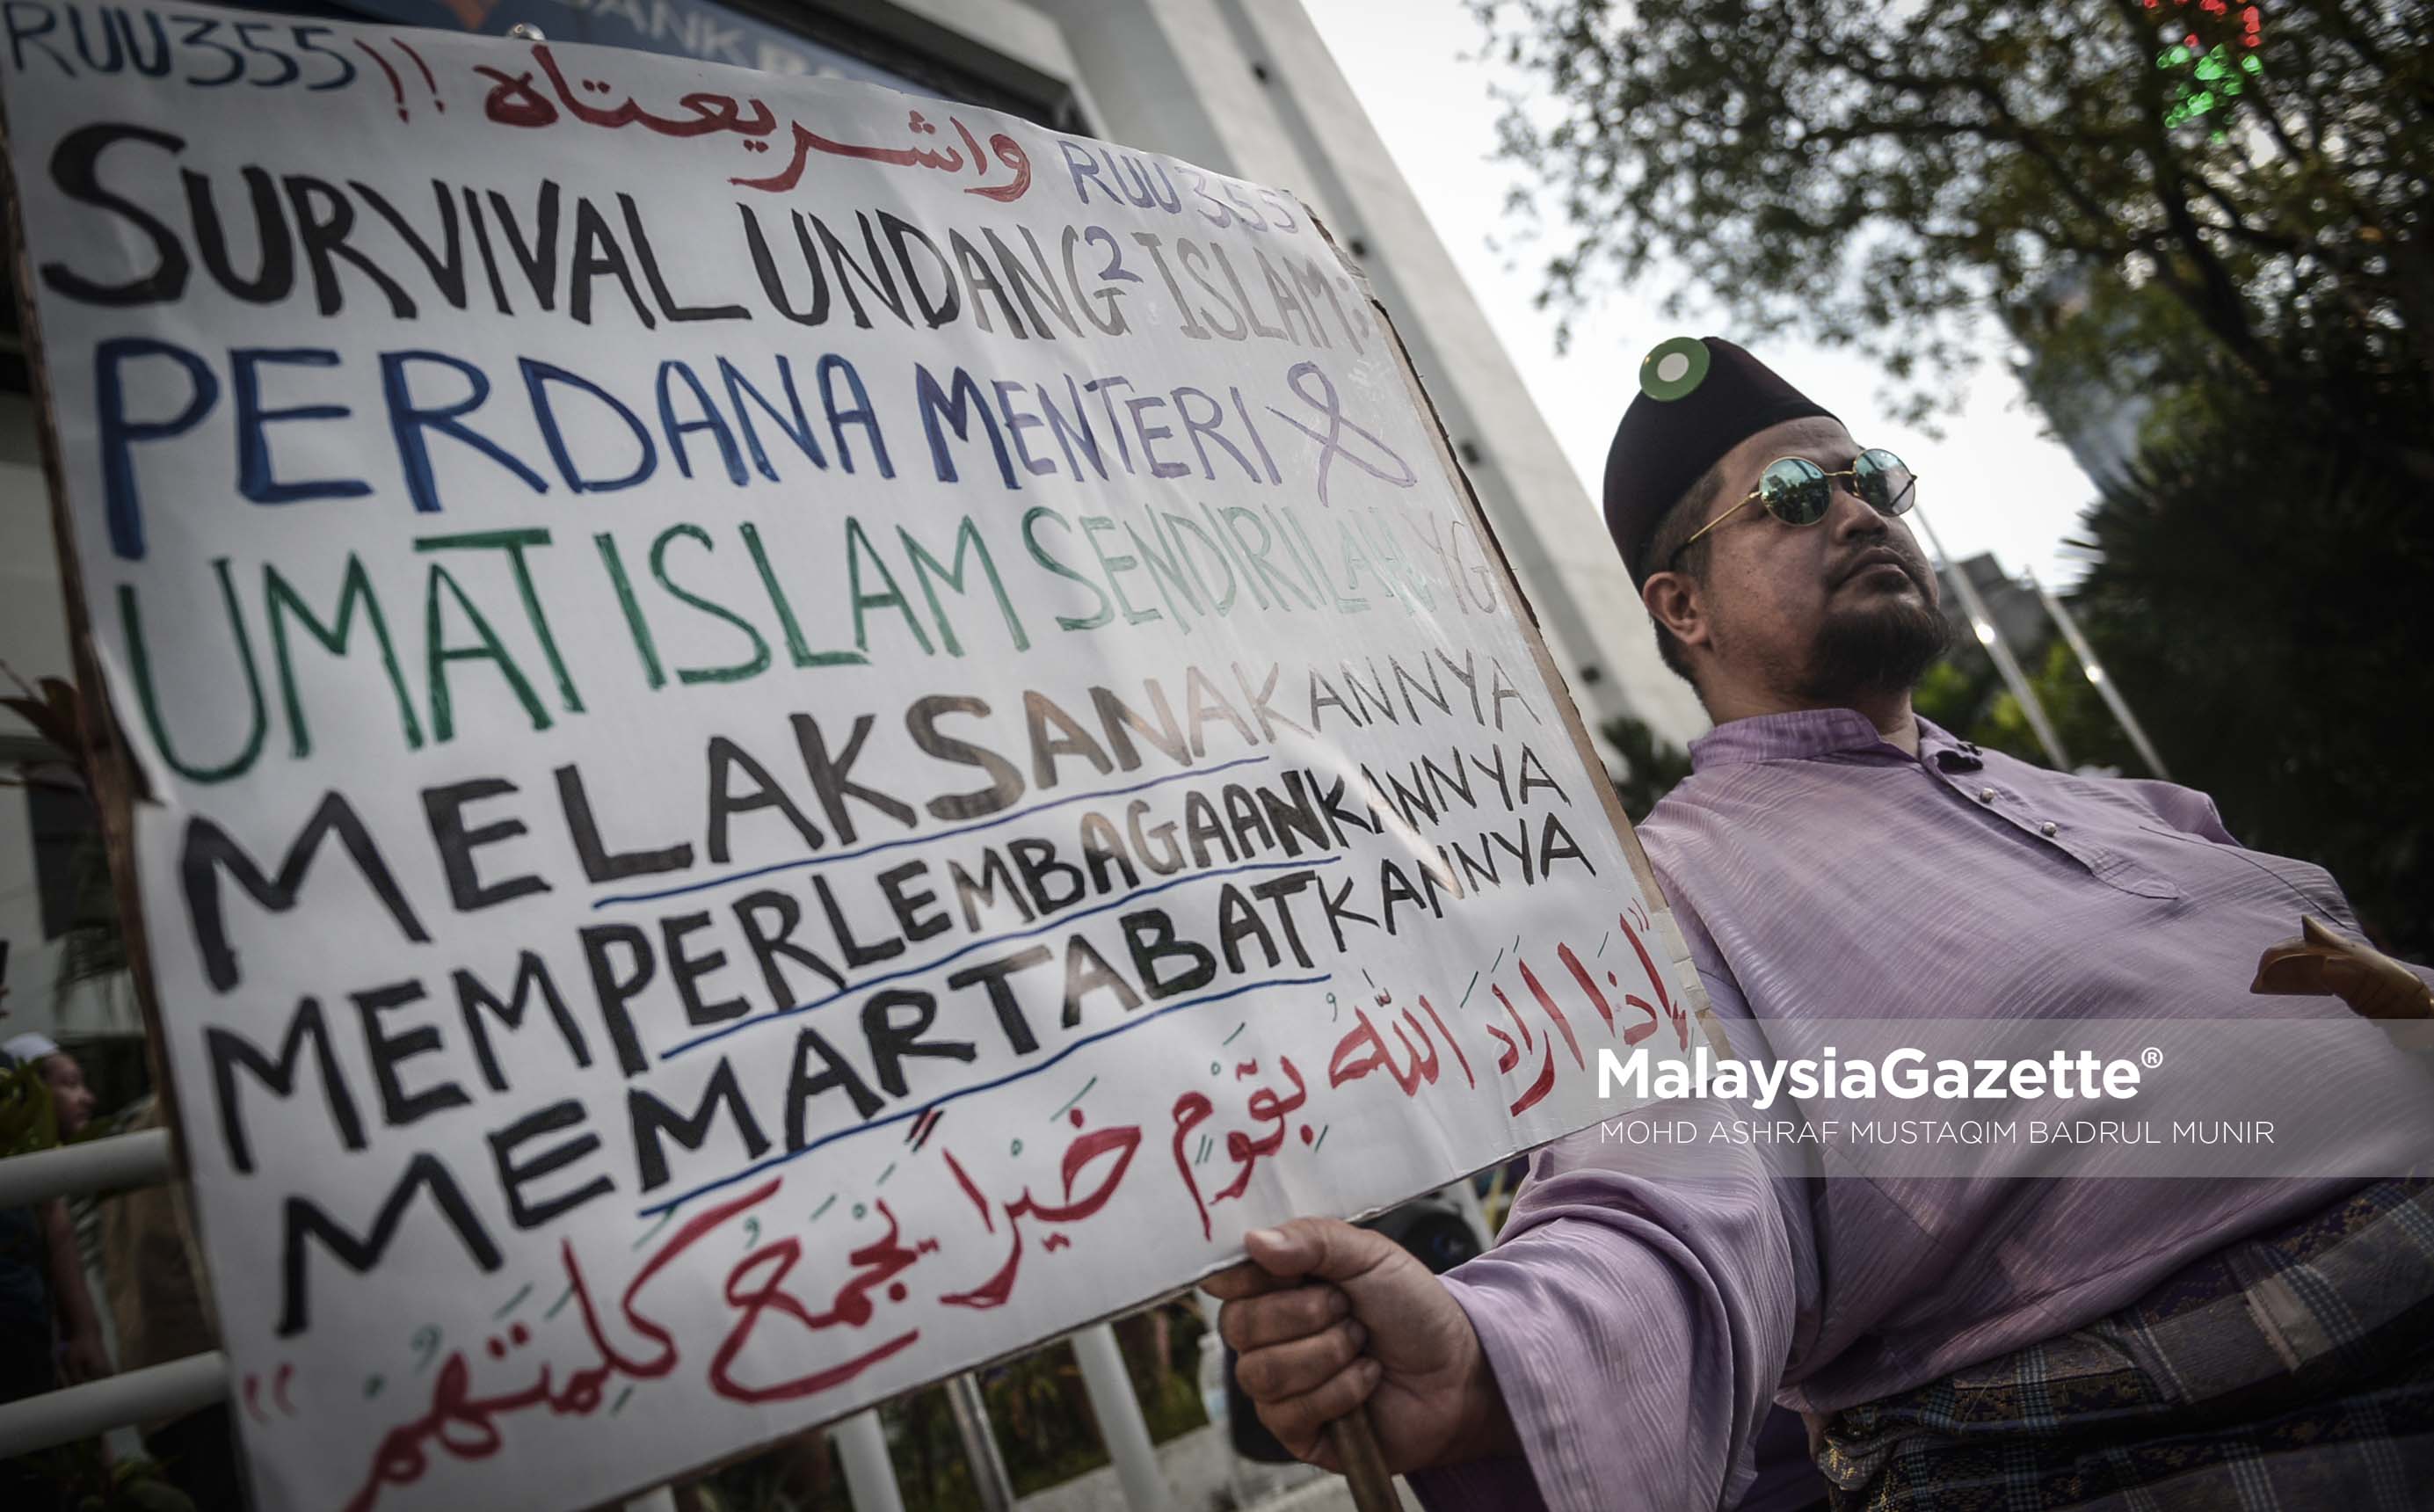 Seorang lelaki memegang sepanduk yang menyatakan sokongan pada Himpunan RUU 355 di Padang Merbok, Kuala Lumpur. foto ASHRAF MUSTAQIM BADRUL MUNIR, 18 FEBRUARI 2017.